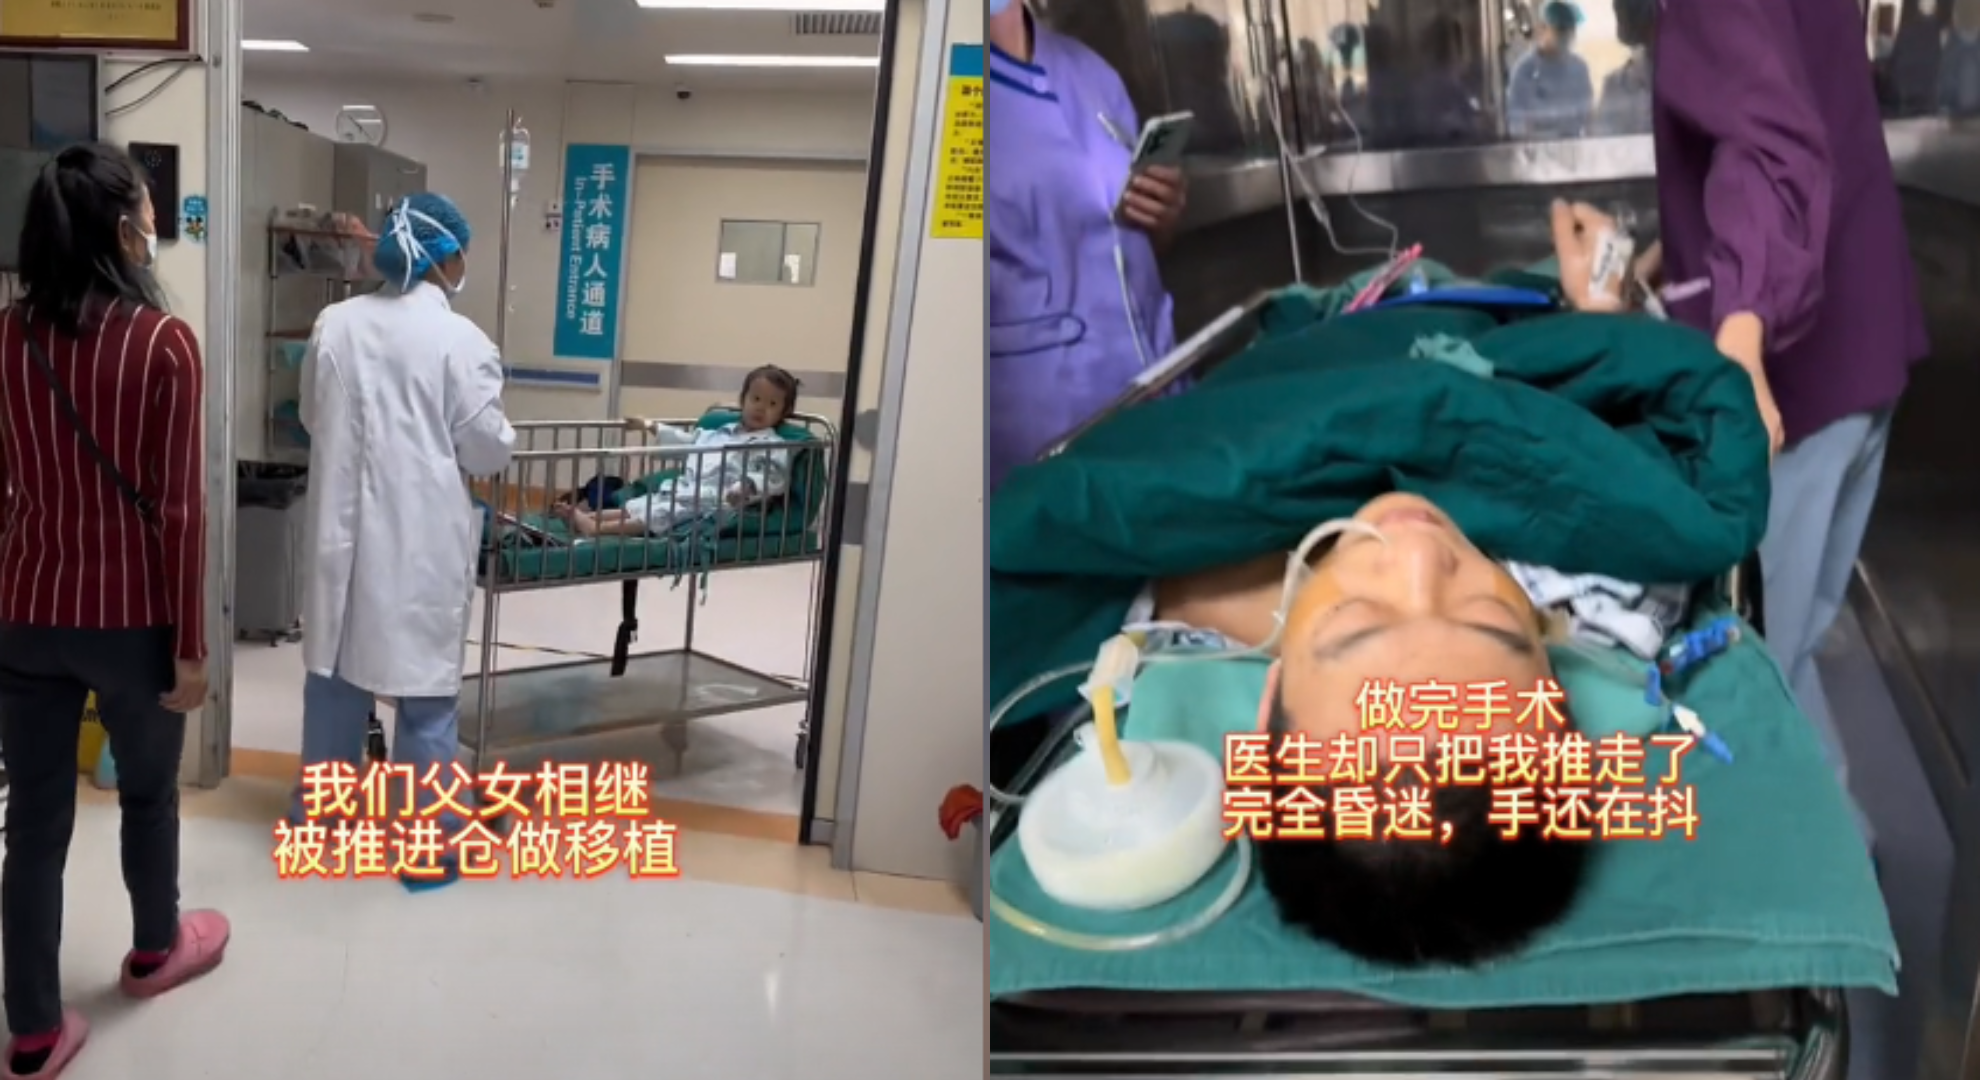 重慶5歲女孩患罕病父捐肝救女1年後仍不幸病逝